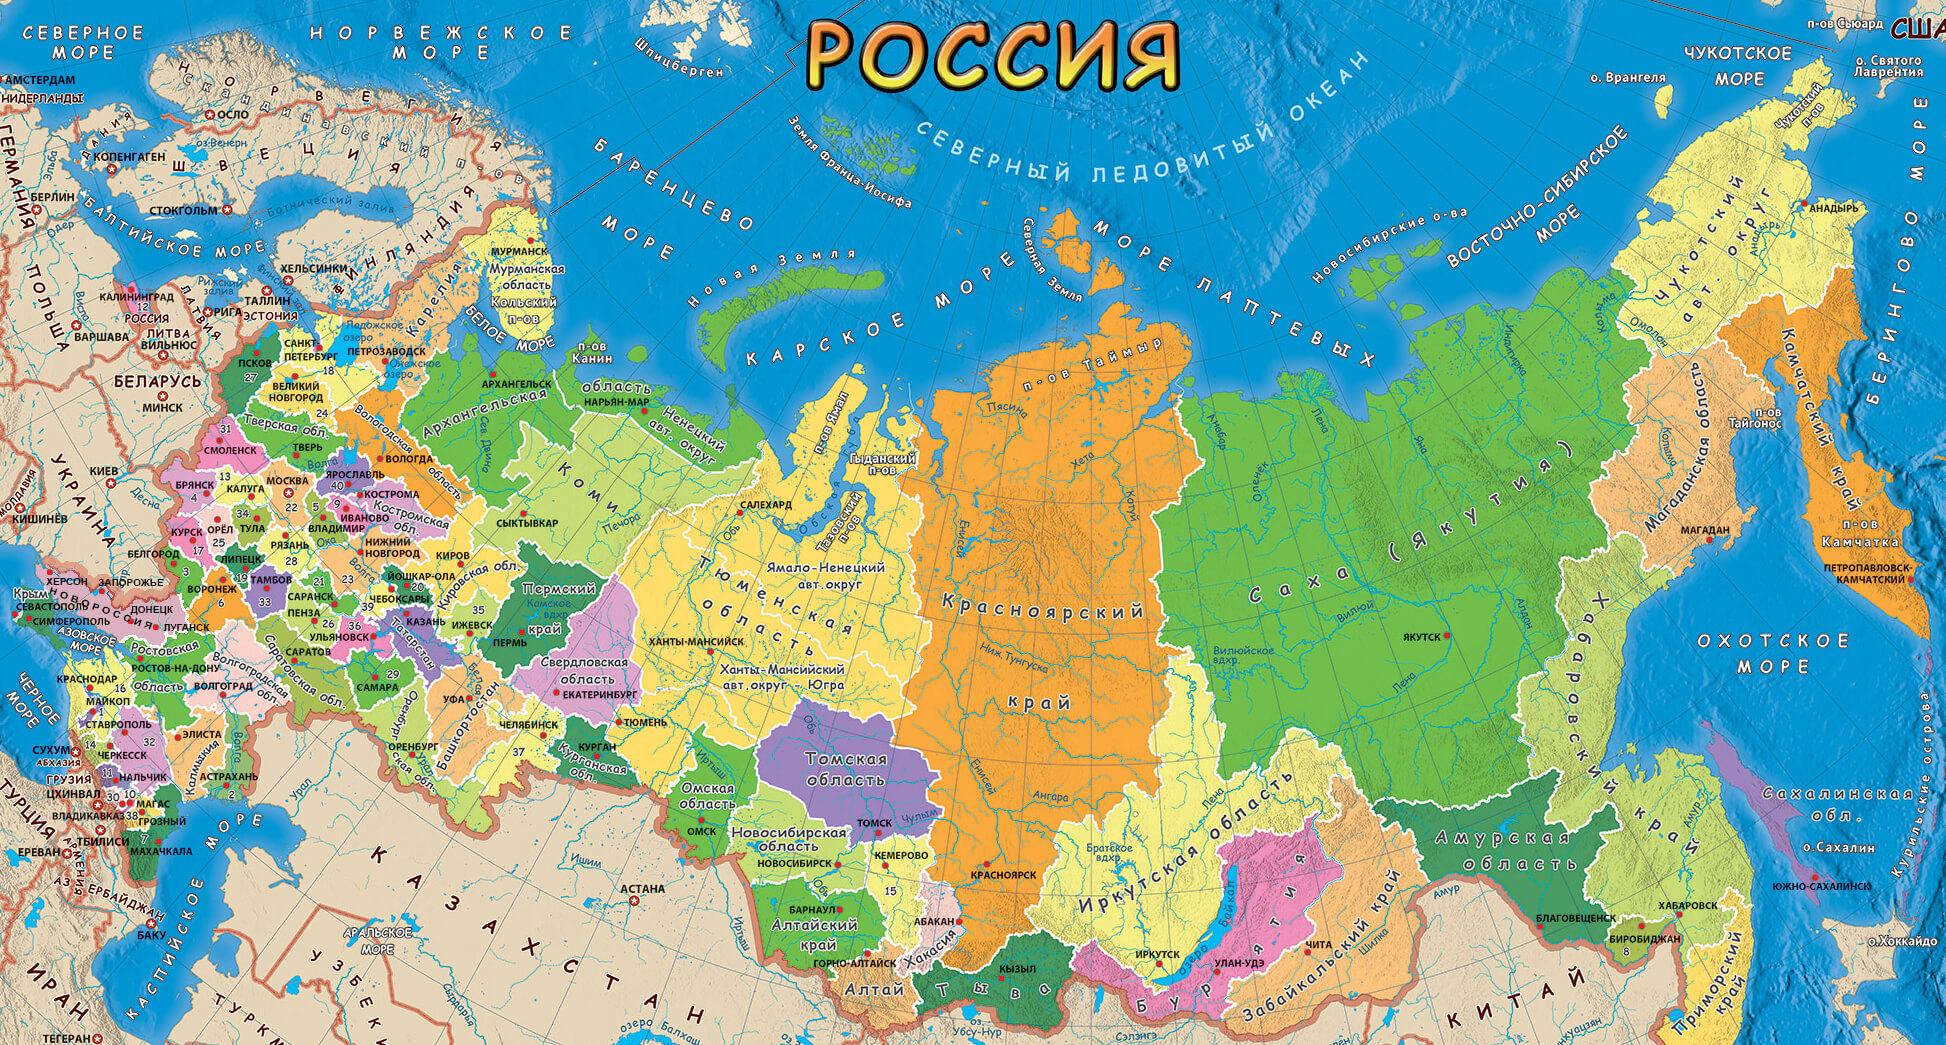 Новая карта России с присоединенными территориями Украины после референдума2022